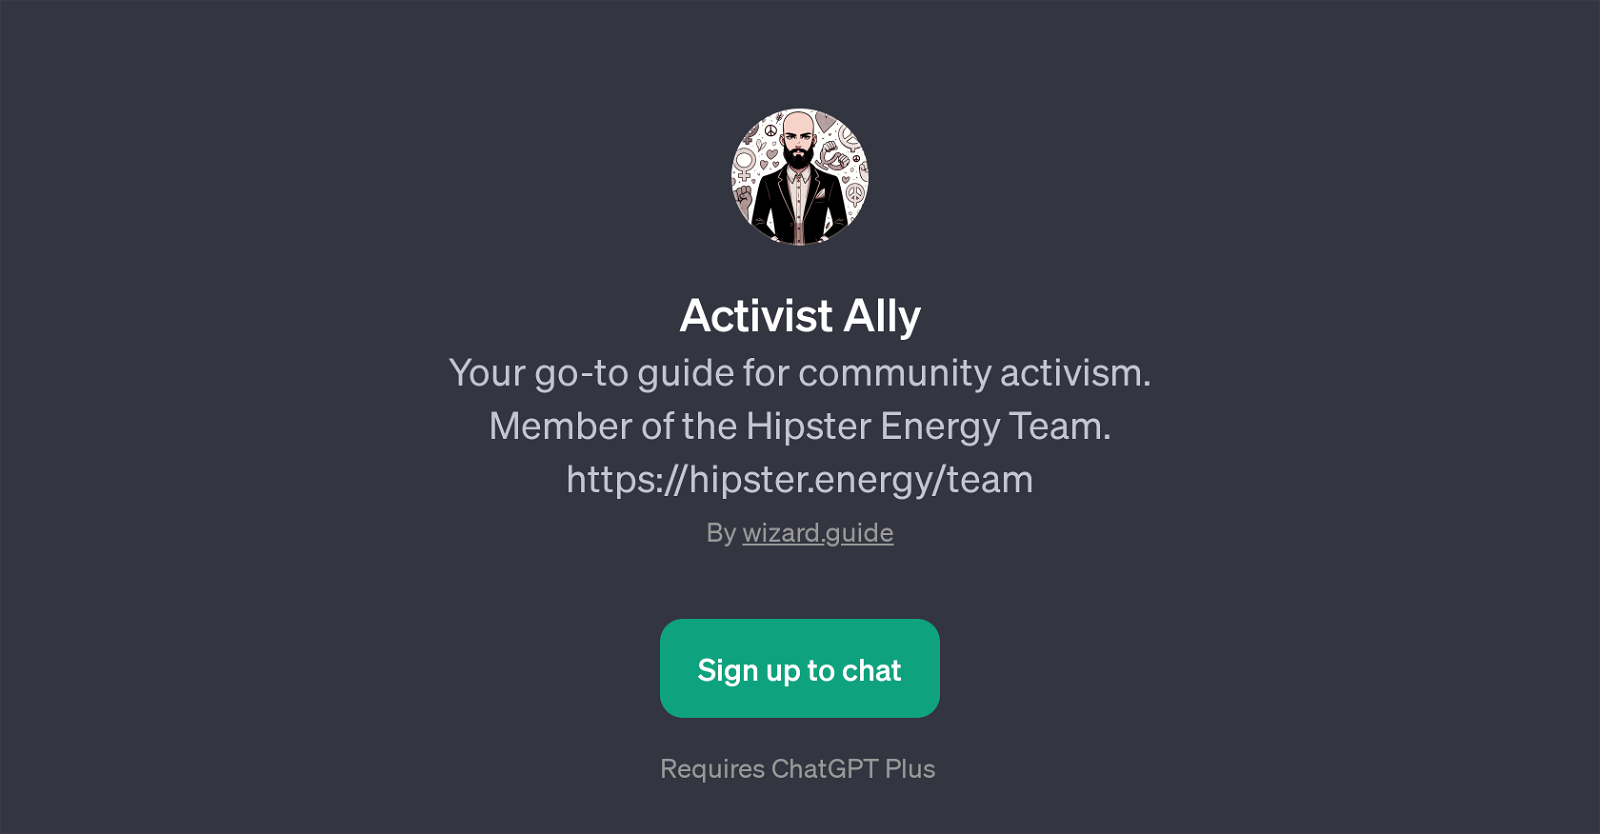 Activist Ally website